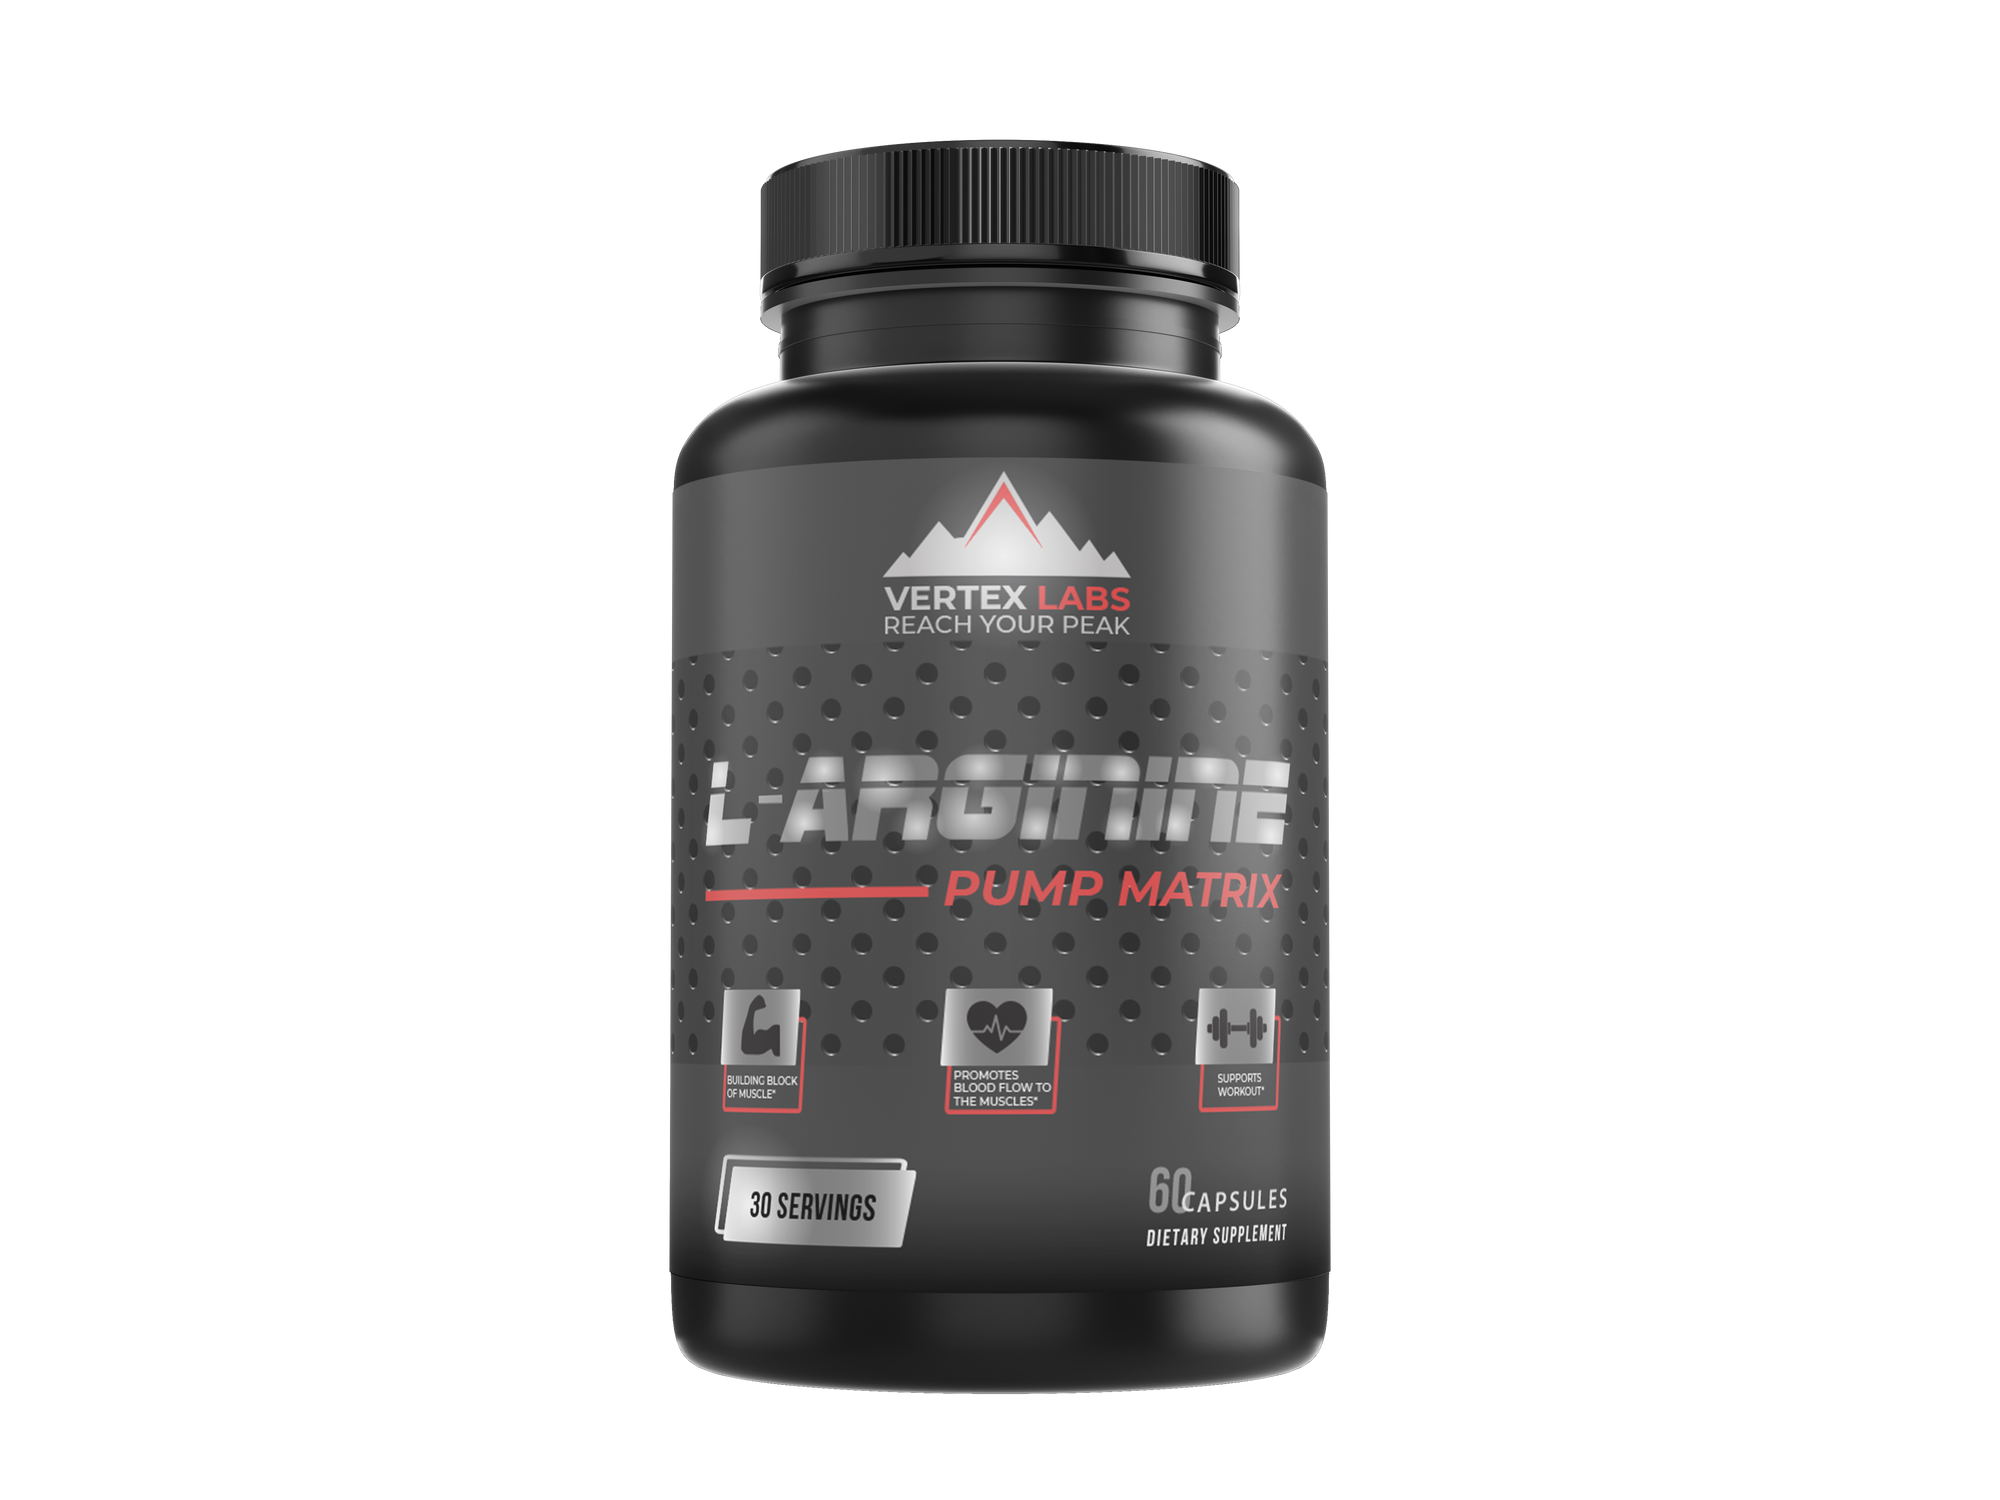 L-Arginine - Pump Matrix